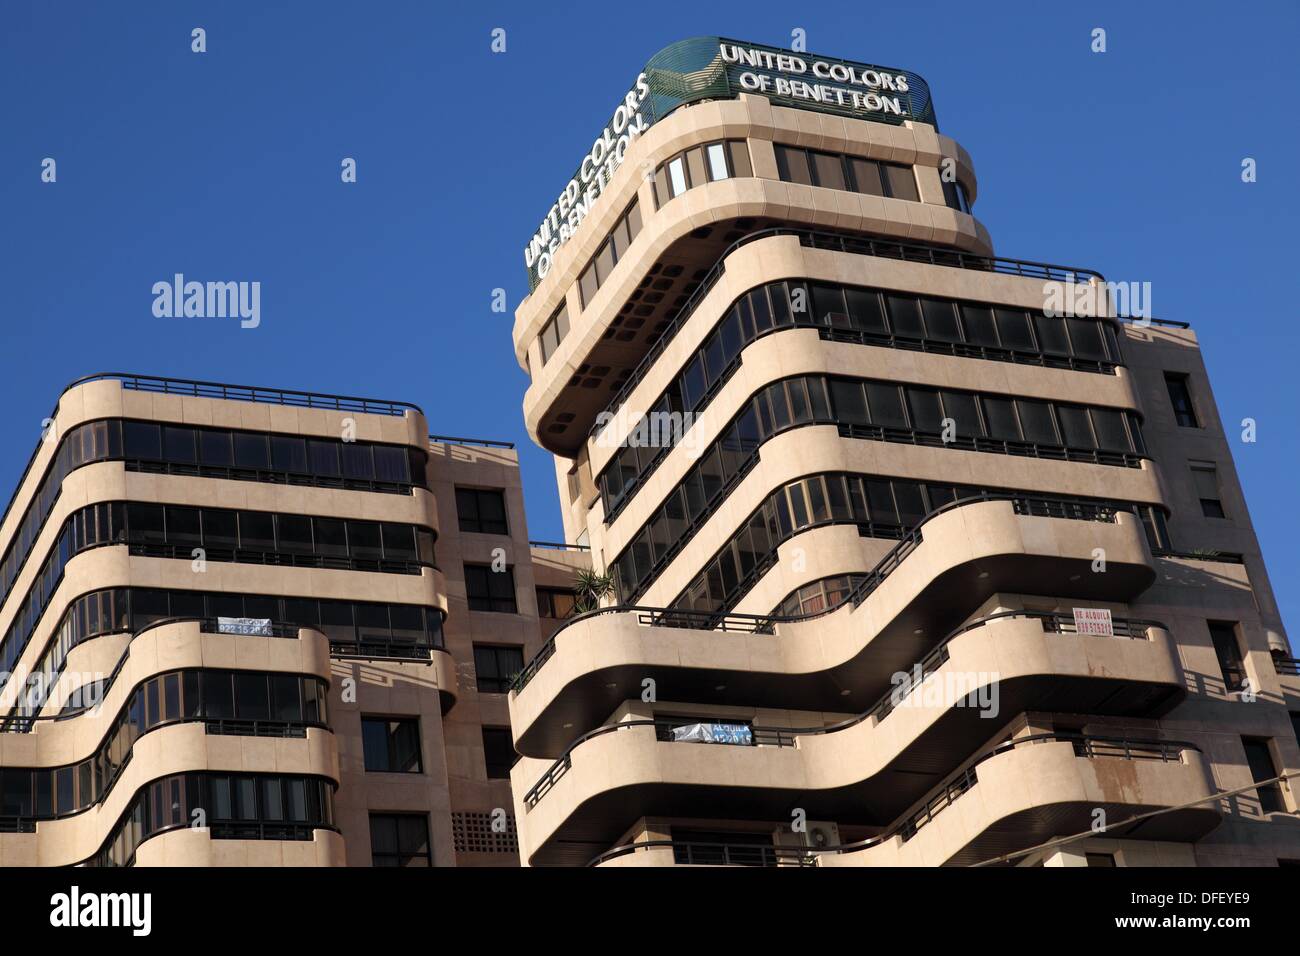 Colores unidos de Benetton signo en la parte superior de un edificio,  Tenerife, Islas Canarias, España Fotografía de stock - Alamy